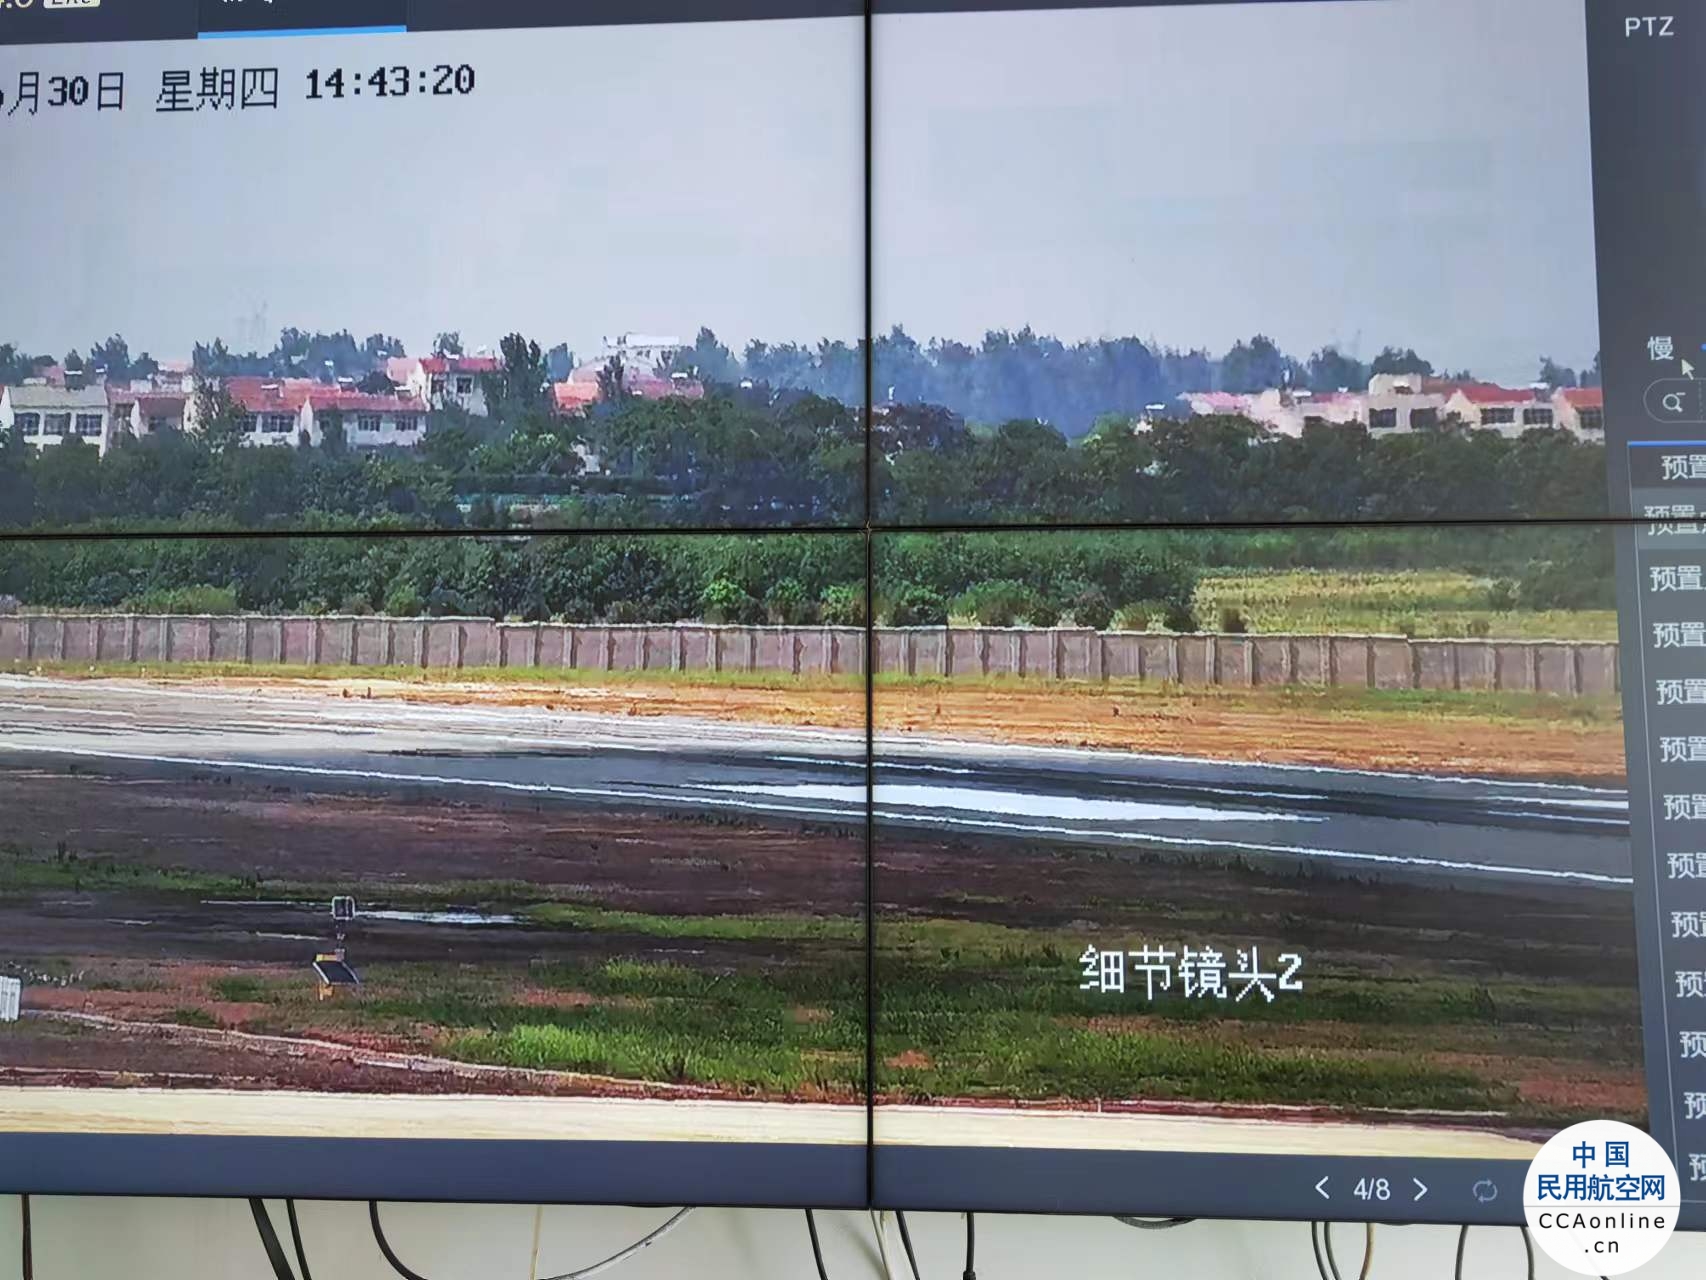 襄阳机场启用飞行区砖围界安防警戒系统